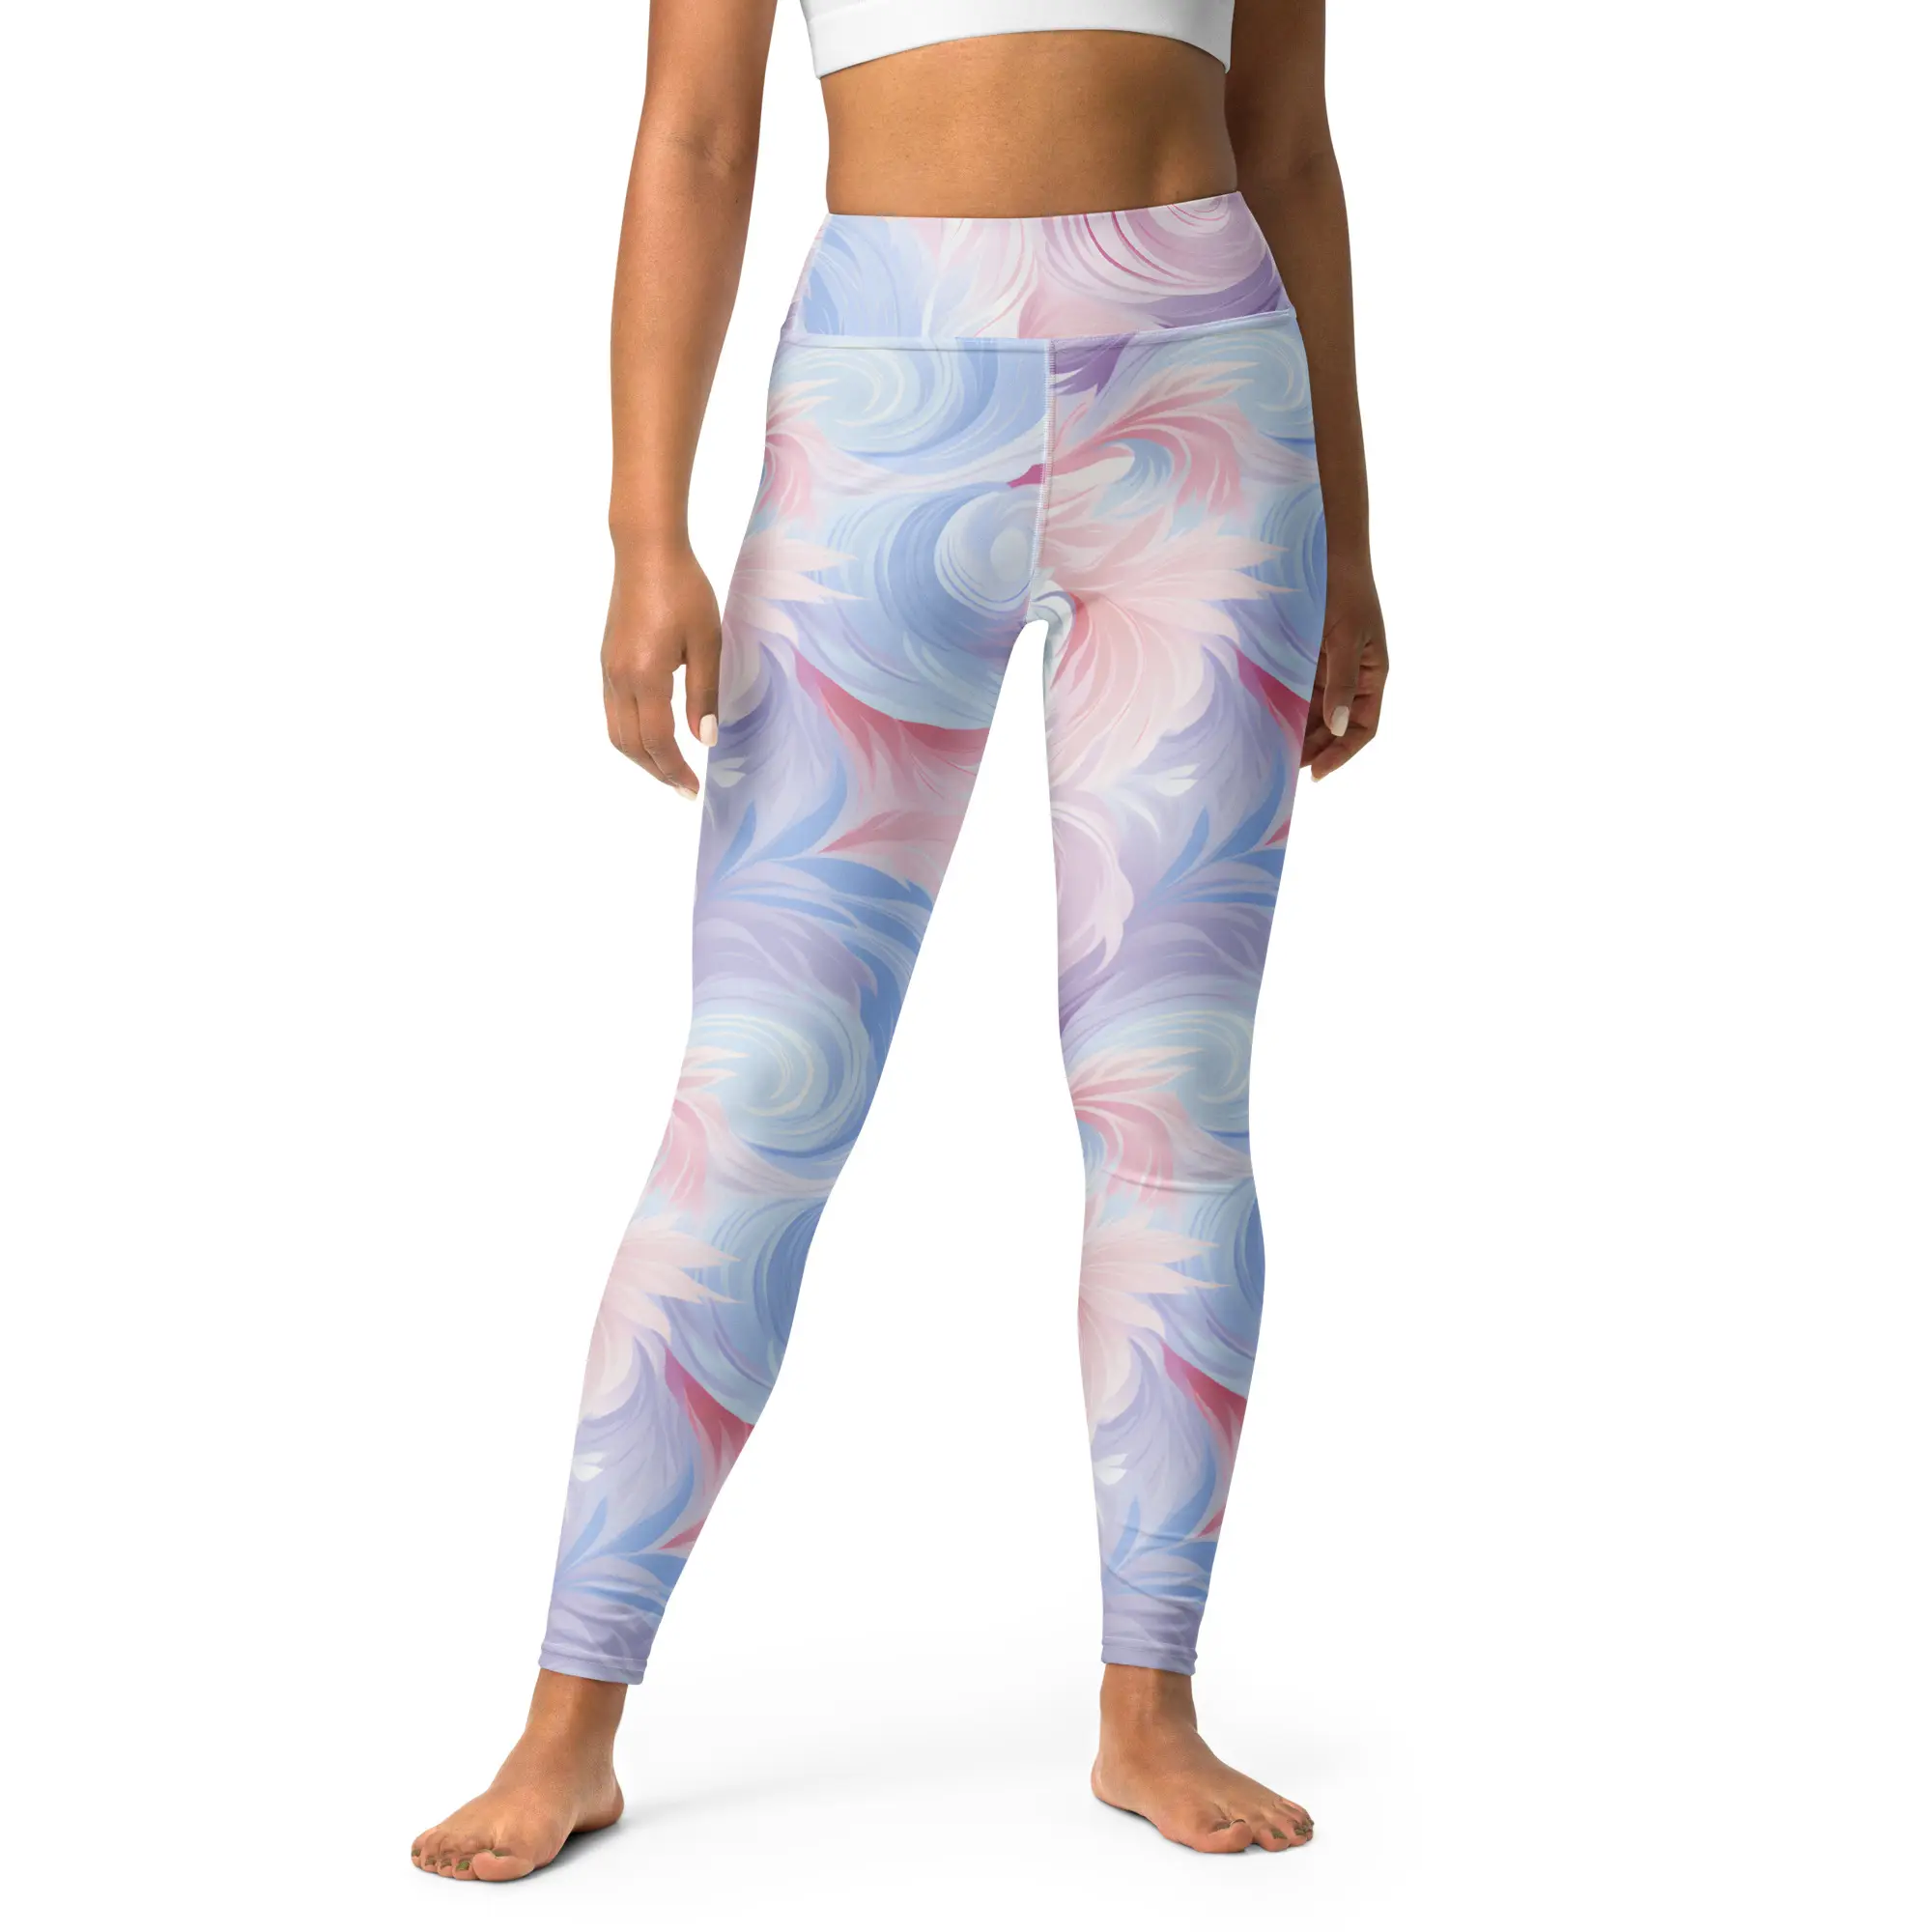 COSMIC Etiqueta Privada fitness glúteos piernas pantalones cortos sin costuras XXX de gran tamaño más tamaño gimnasio entrenamiento conjuntos ejercicio yoga leggings para mujeres